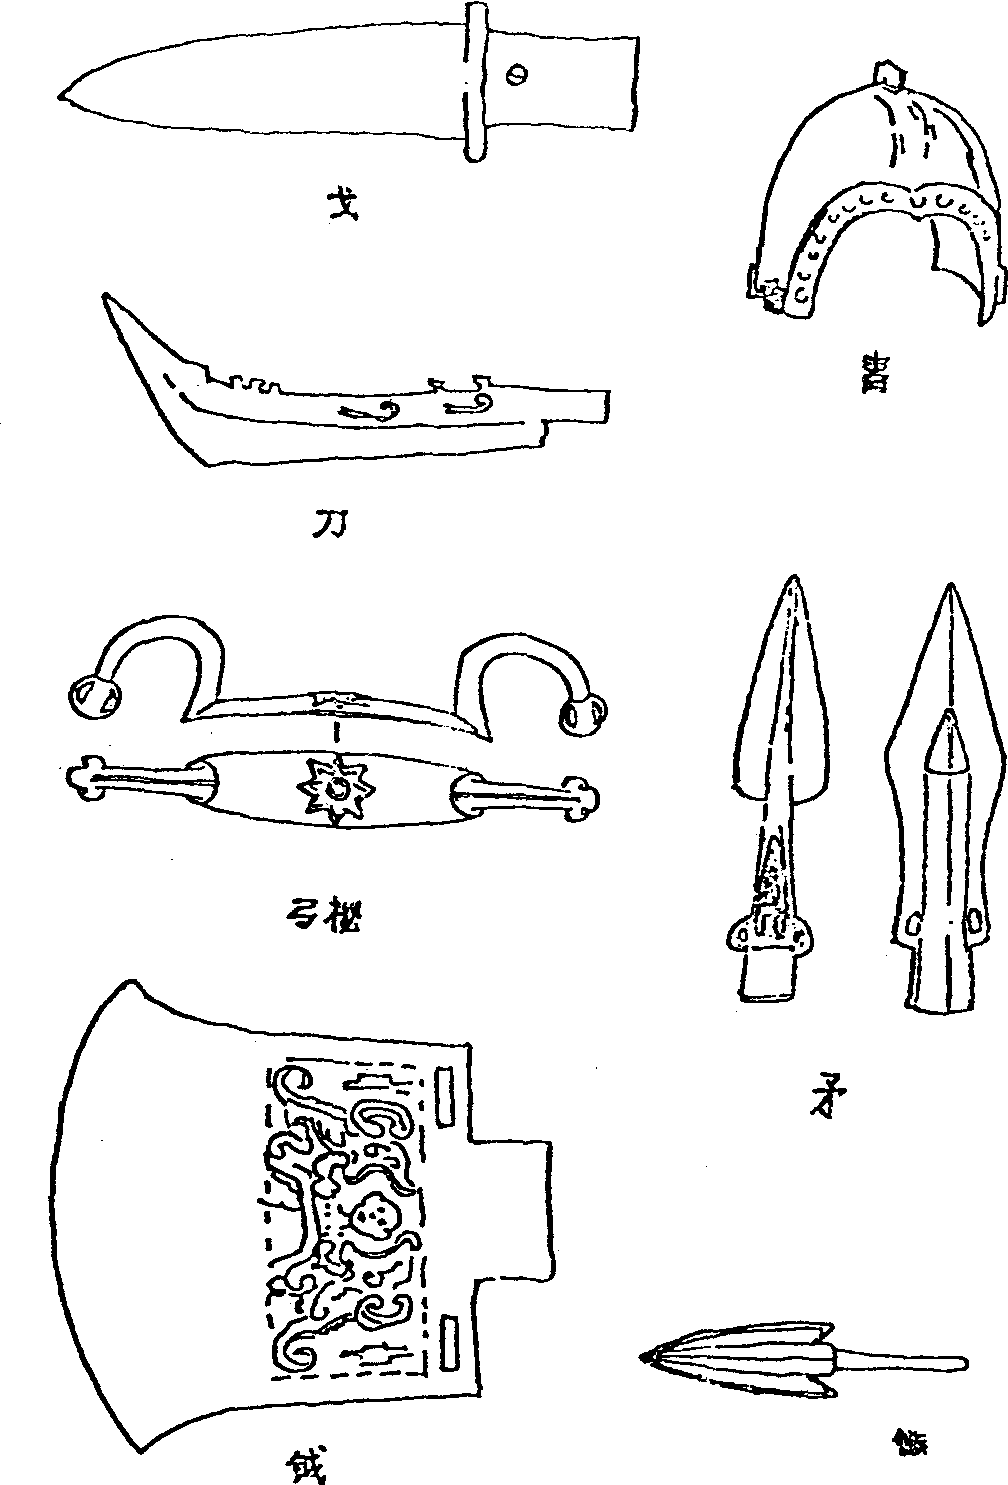 1 青铜生产工具与武器的广泛使用